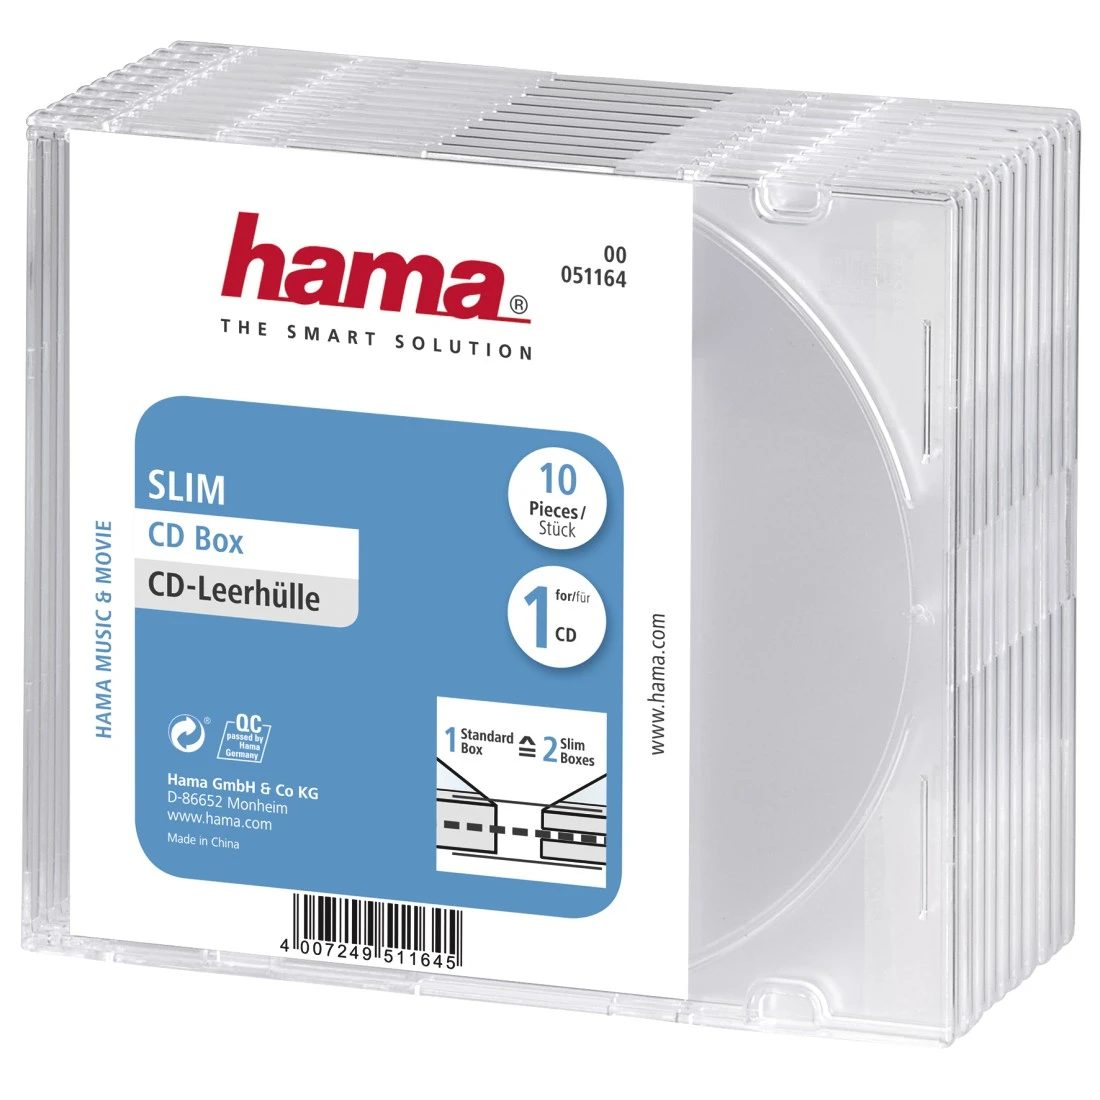 Hama boîtier vide pour cd slim, slim case, boîte plastique